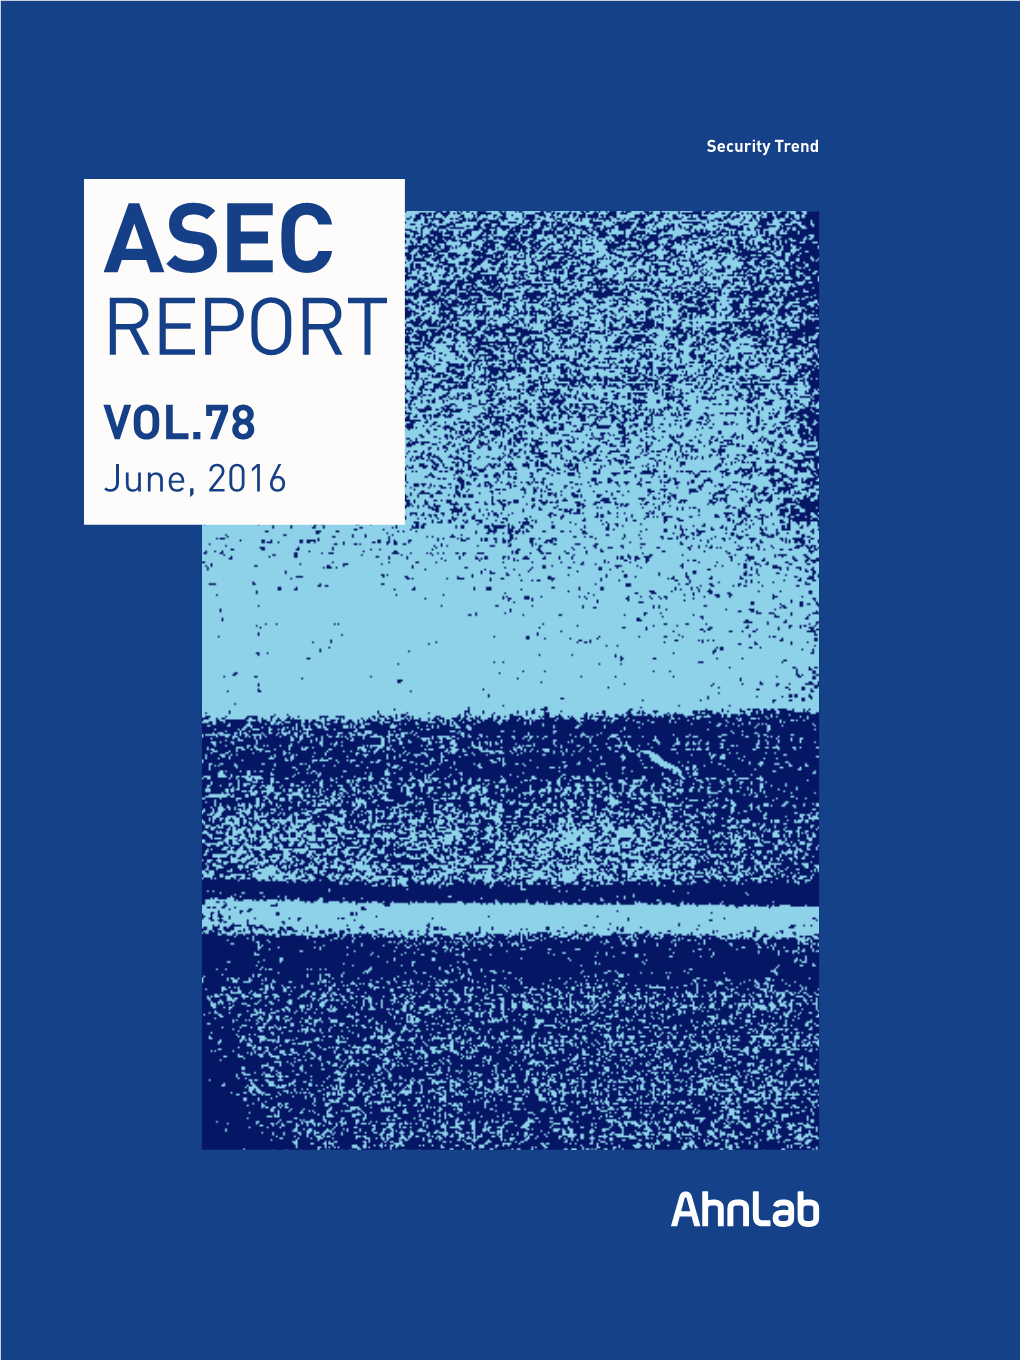 VOL.78 June, 2016 ASEC REPORT VOL.78 June, 2016